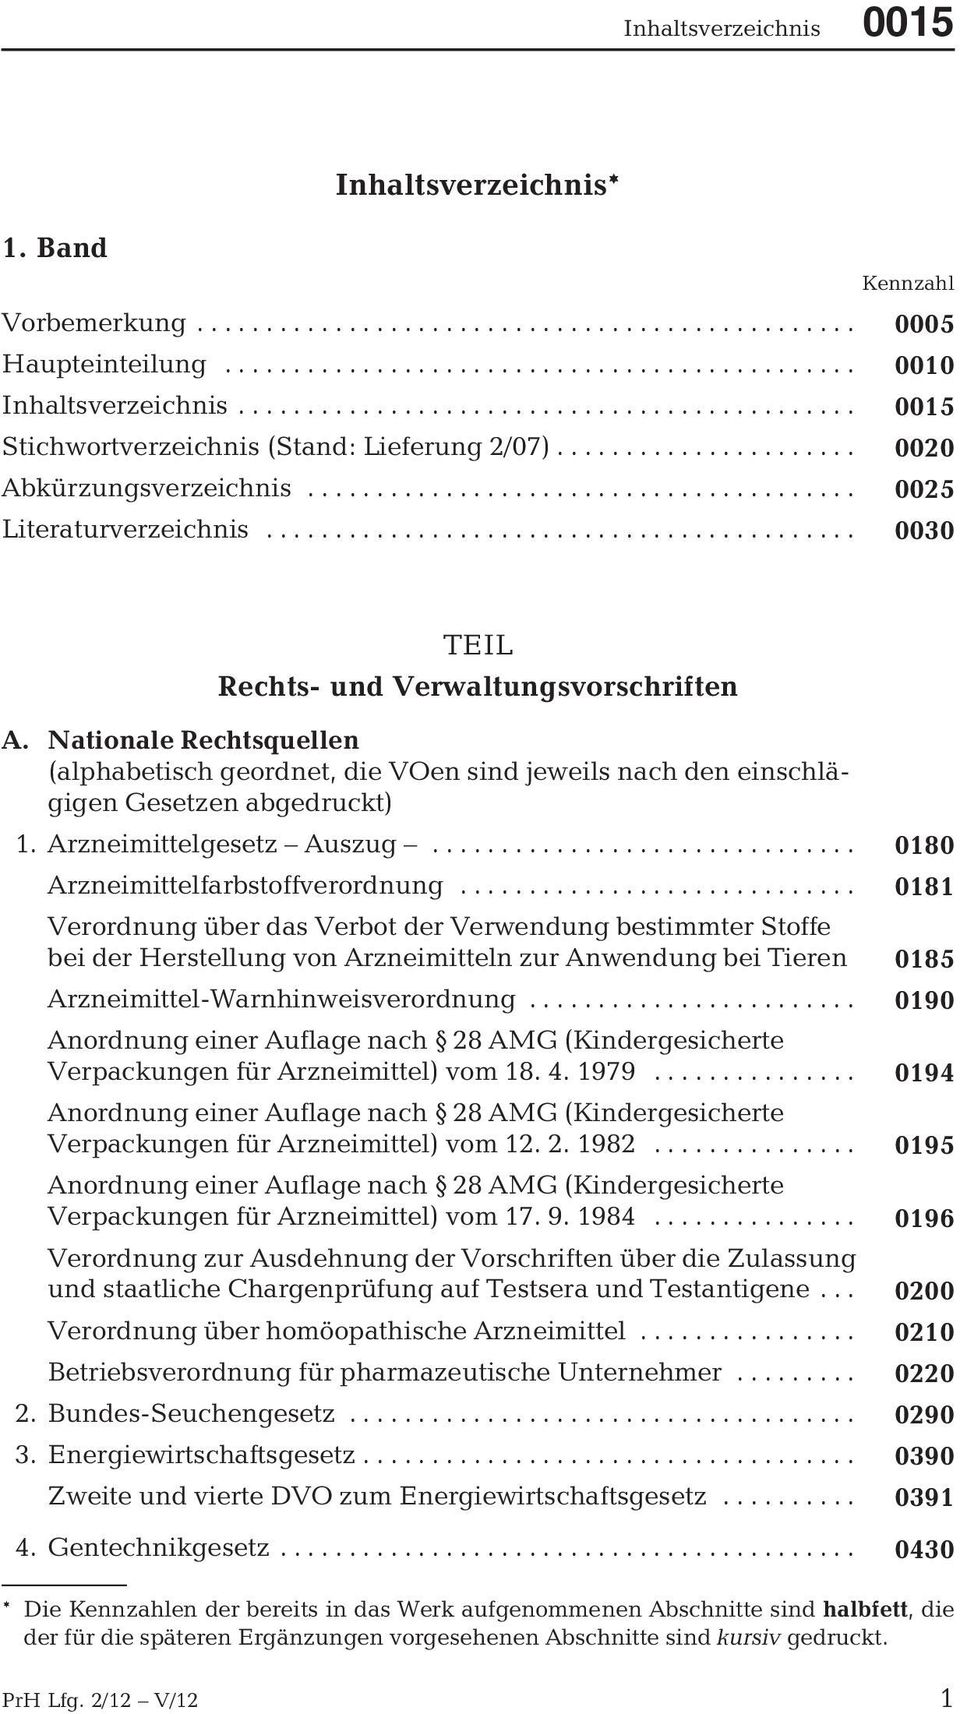 Arzneimittelgesetz Auszug... 0180 Arzneimittelfarbstoffverordnung.